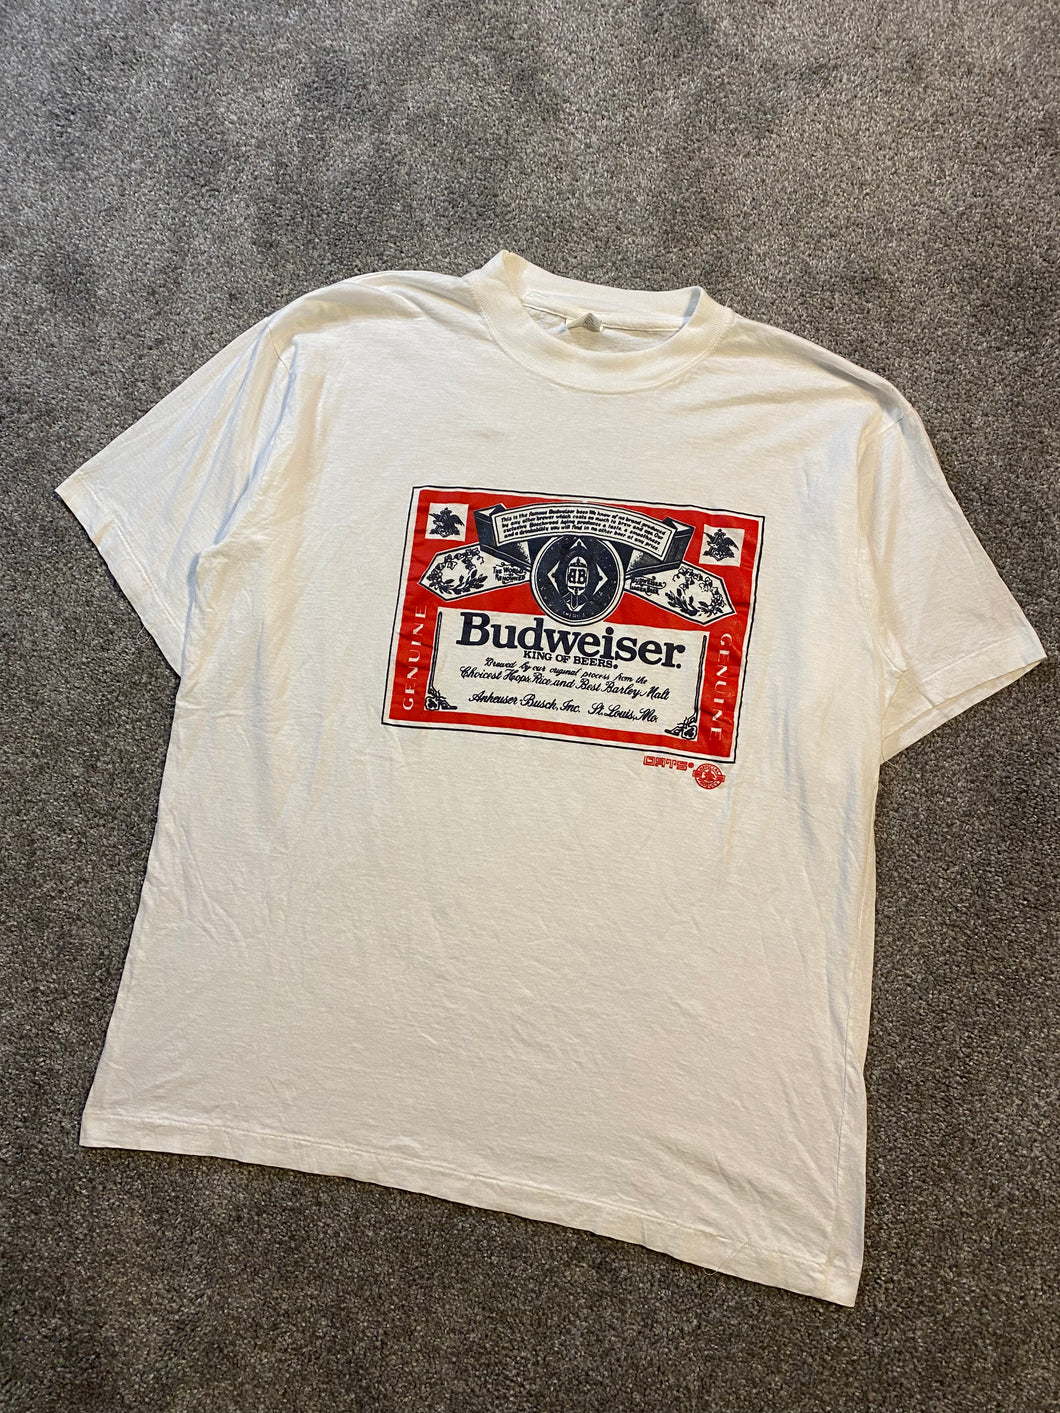 Vintage 1990s Budweiser King of Beers Tee Shirt - XL